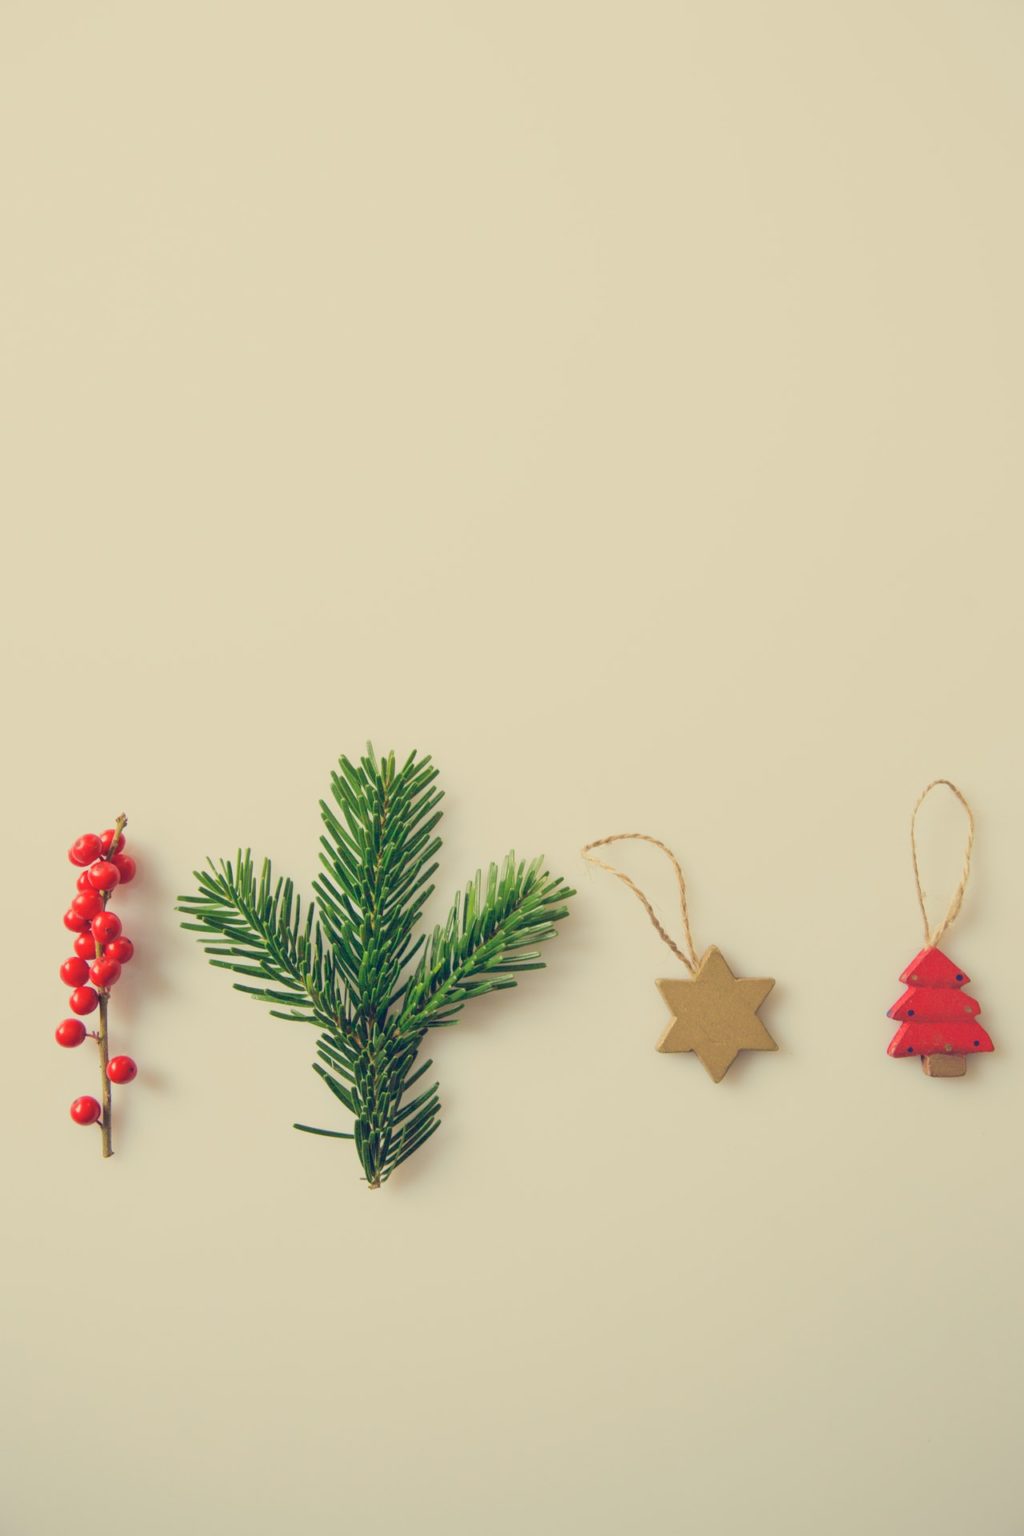 Natural Christmas ornaments